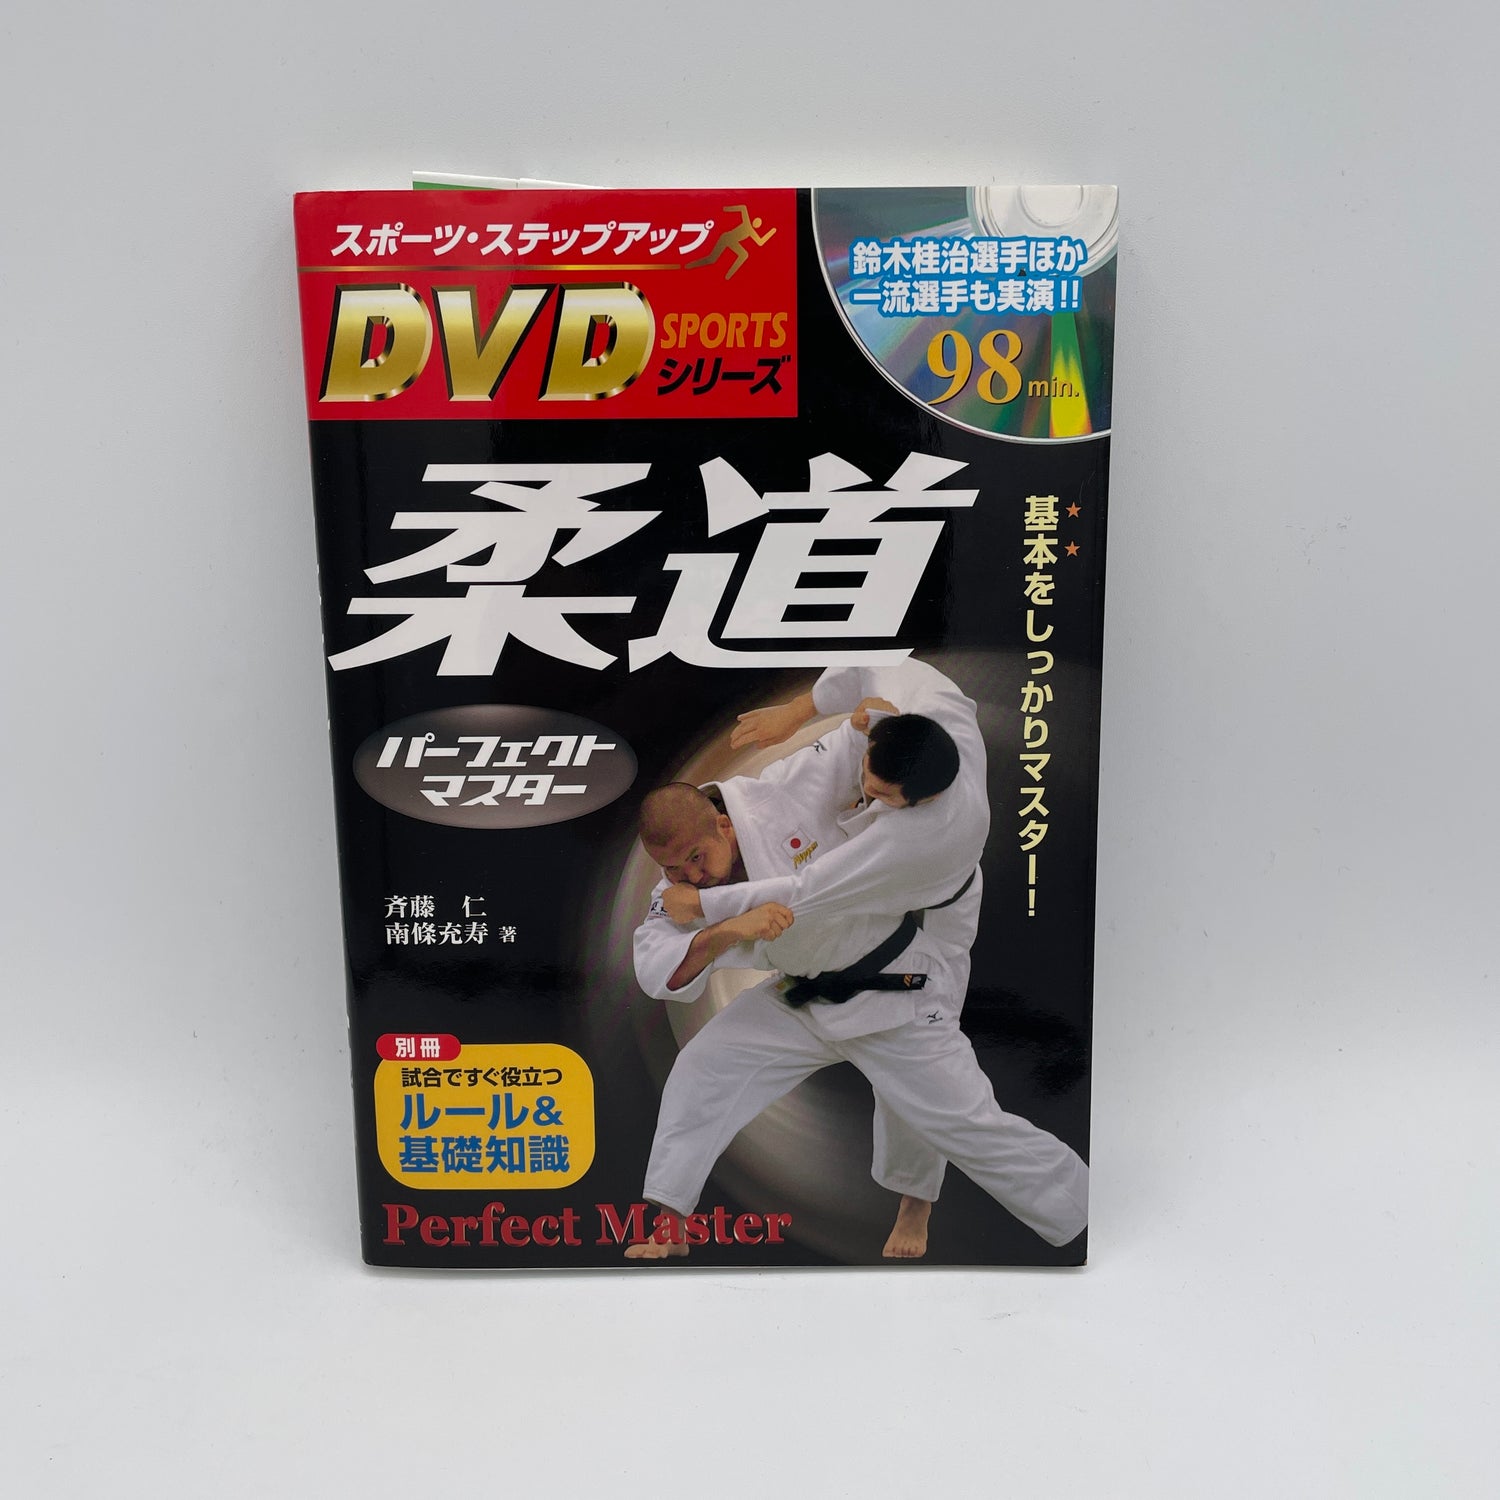 オリンピック金メダリスト斉藤仁の柔道マスタリーブック&DVD (中古品) 